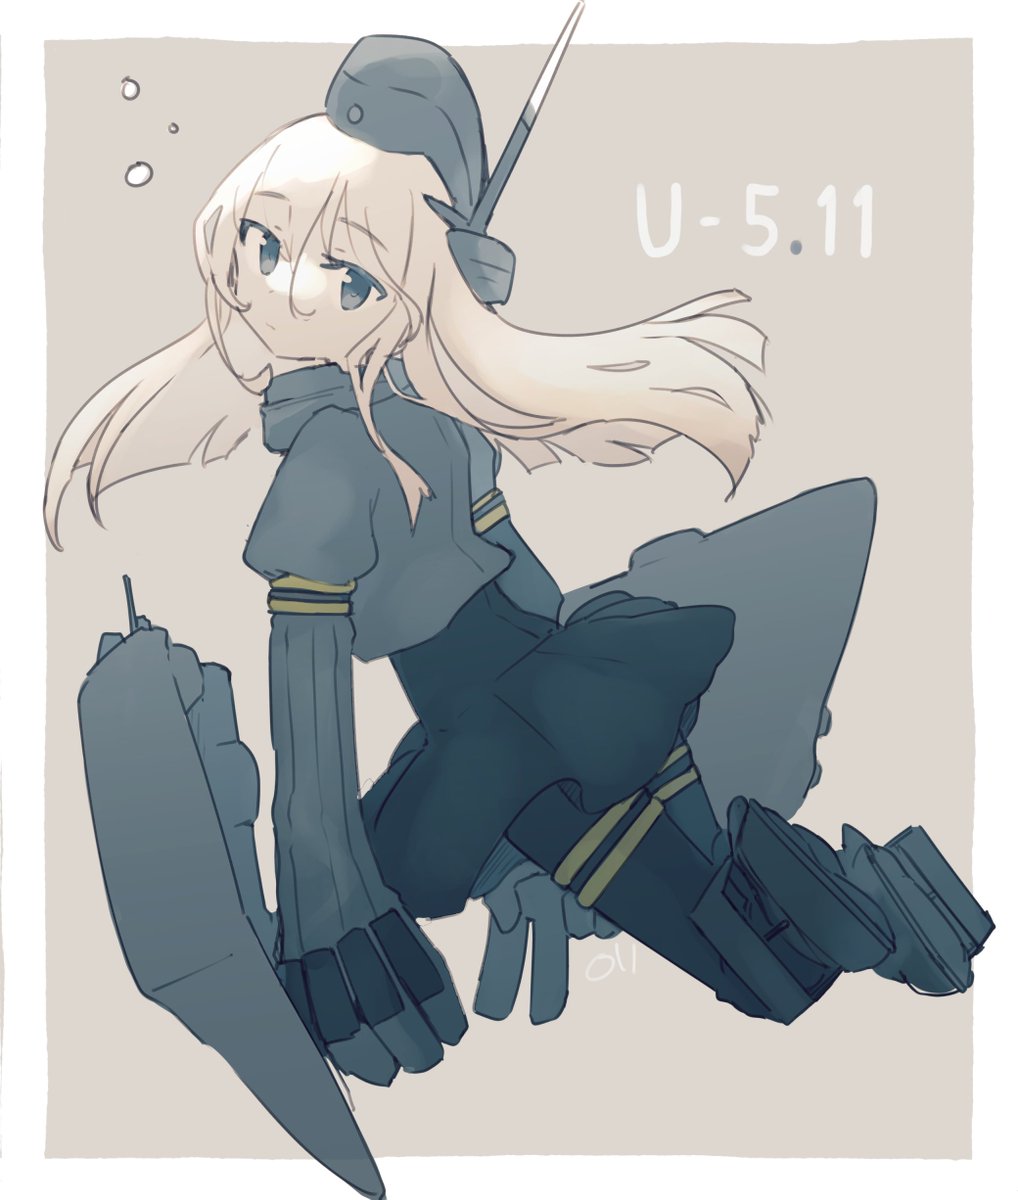 U-511(艦これ) 「511 」|まるかんのイラスト